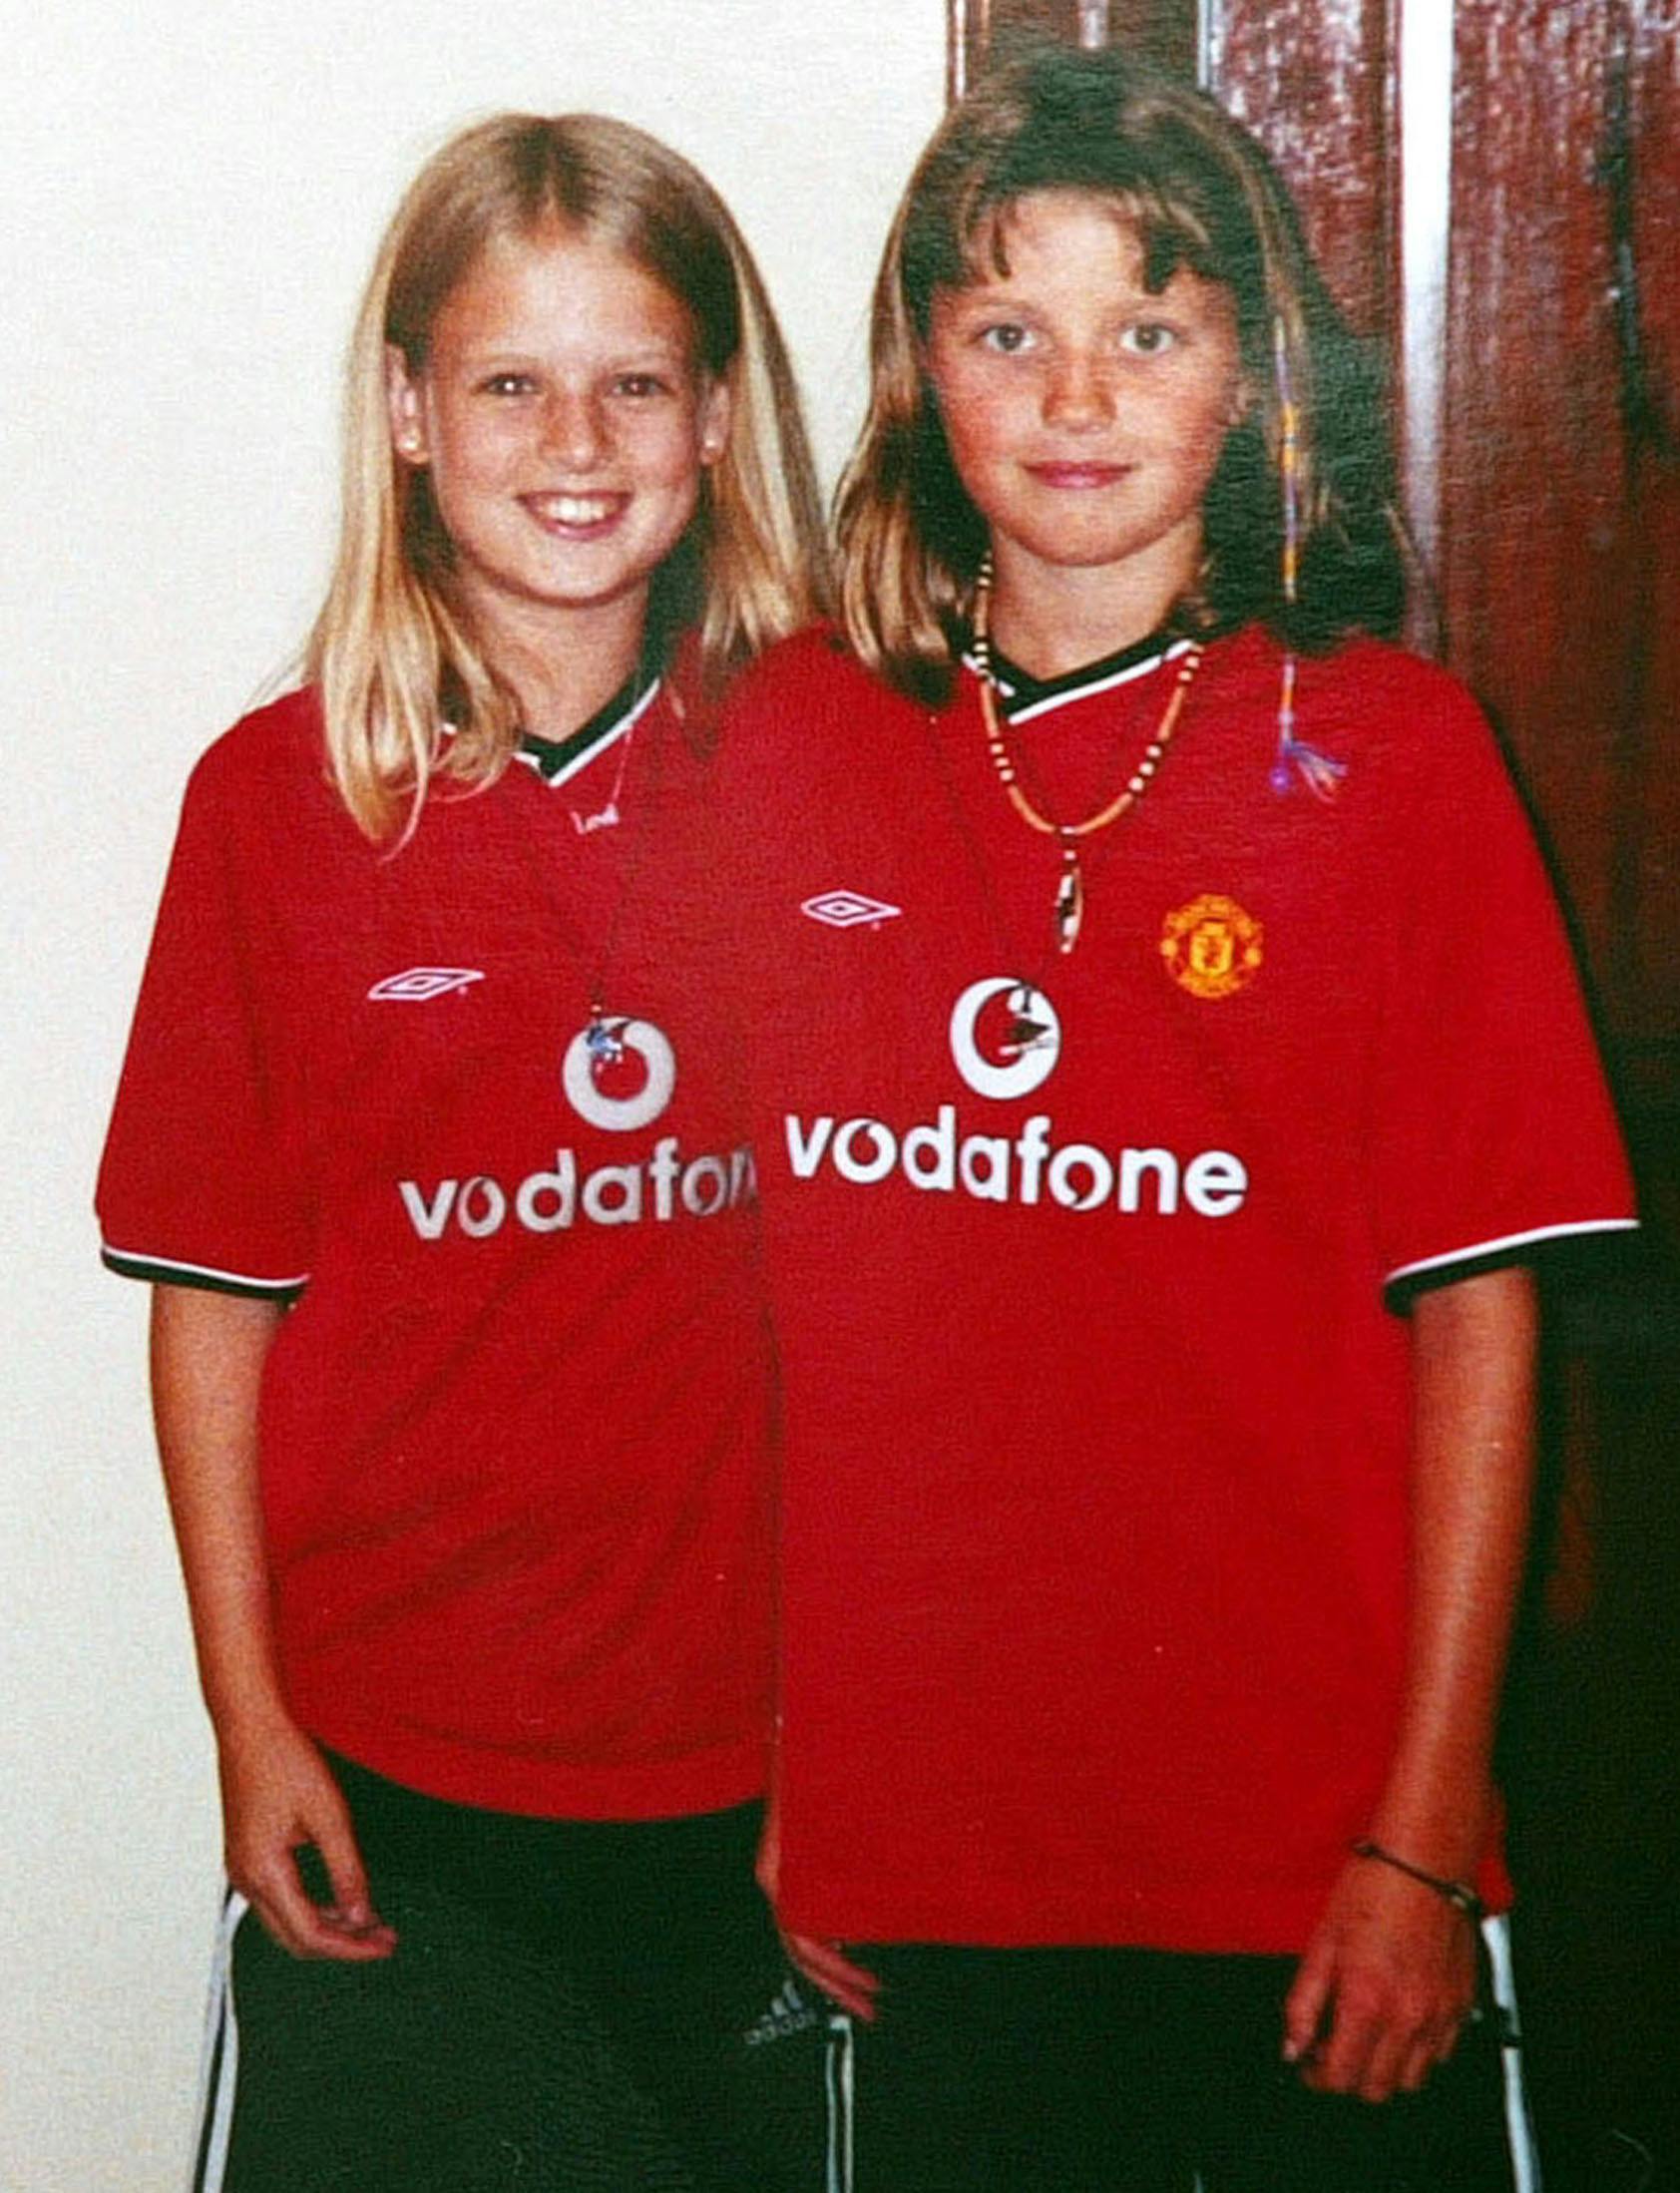 Kort inden de forsvandt, havde Jessica Chapman og Holly Wells grillet hos Hollys familie. I den forbindelse havde de smilende fodboldpiger ladet sig fotografere iført matchende Manchester United-bluser.
